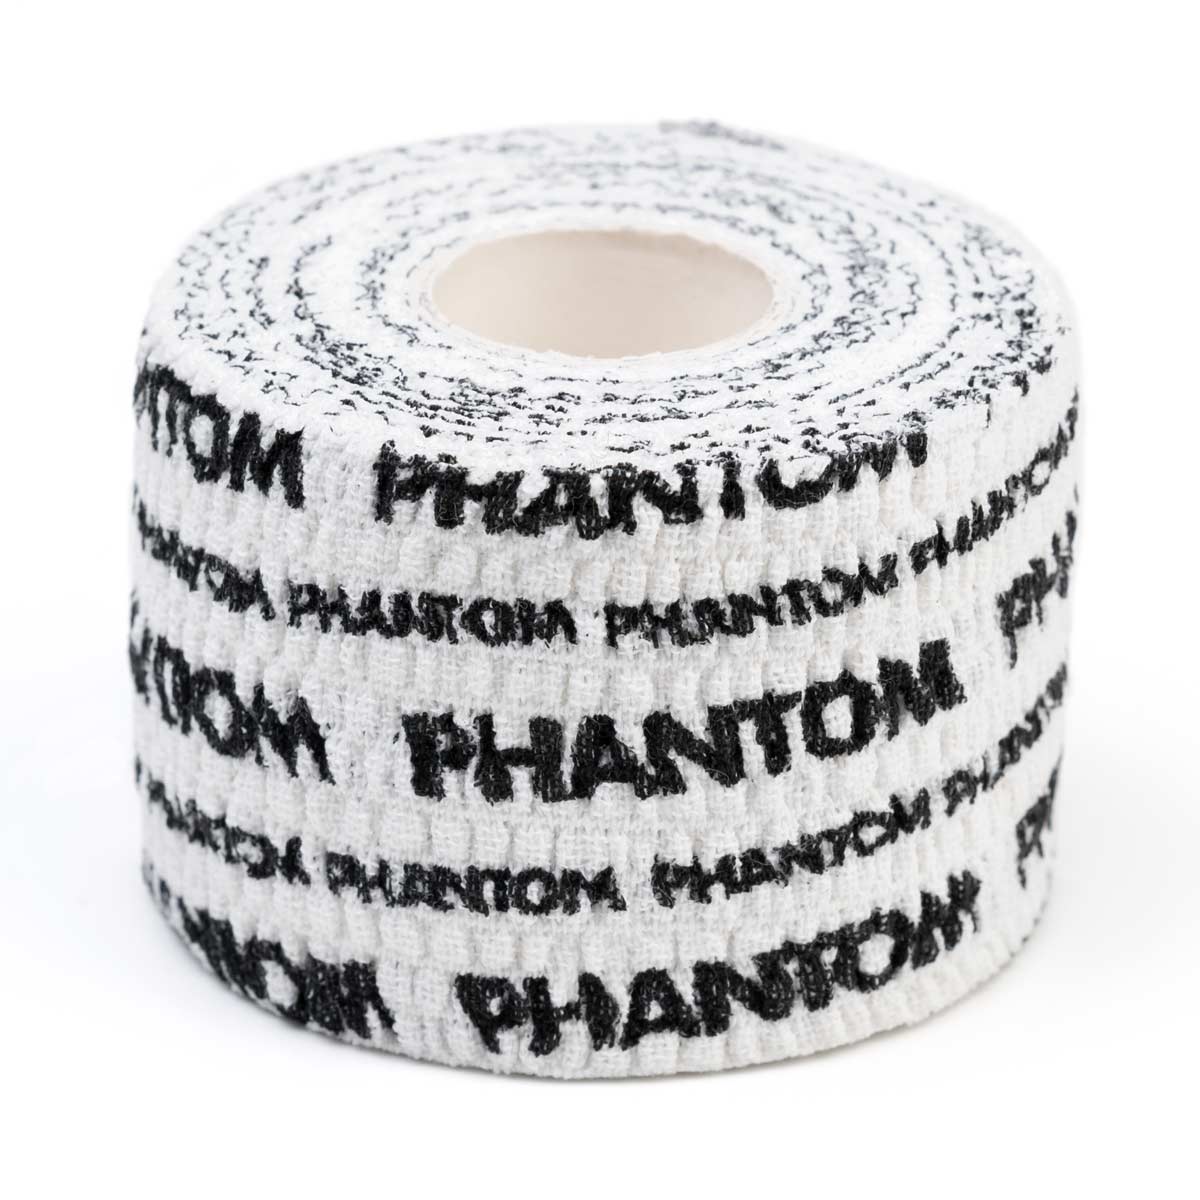 Phantom Grip Tape für Fitness und Kampfsport in der Farbe weiss.